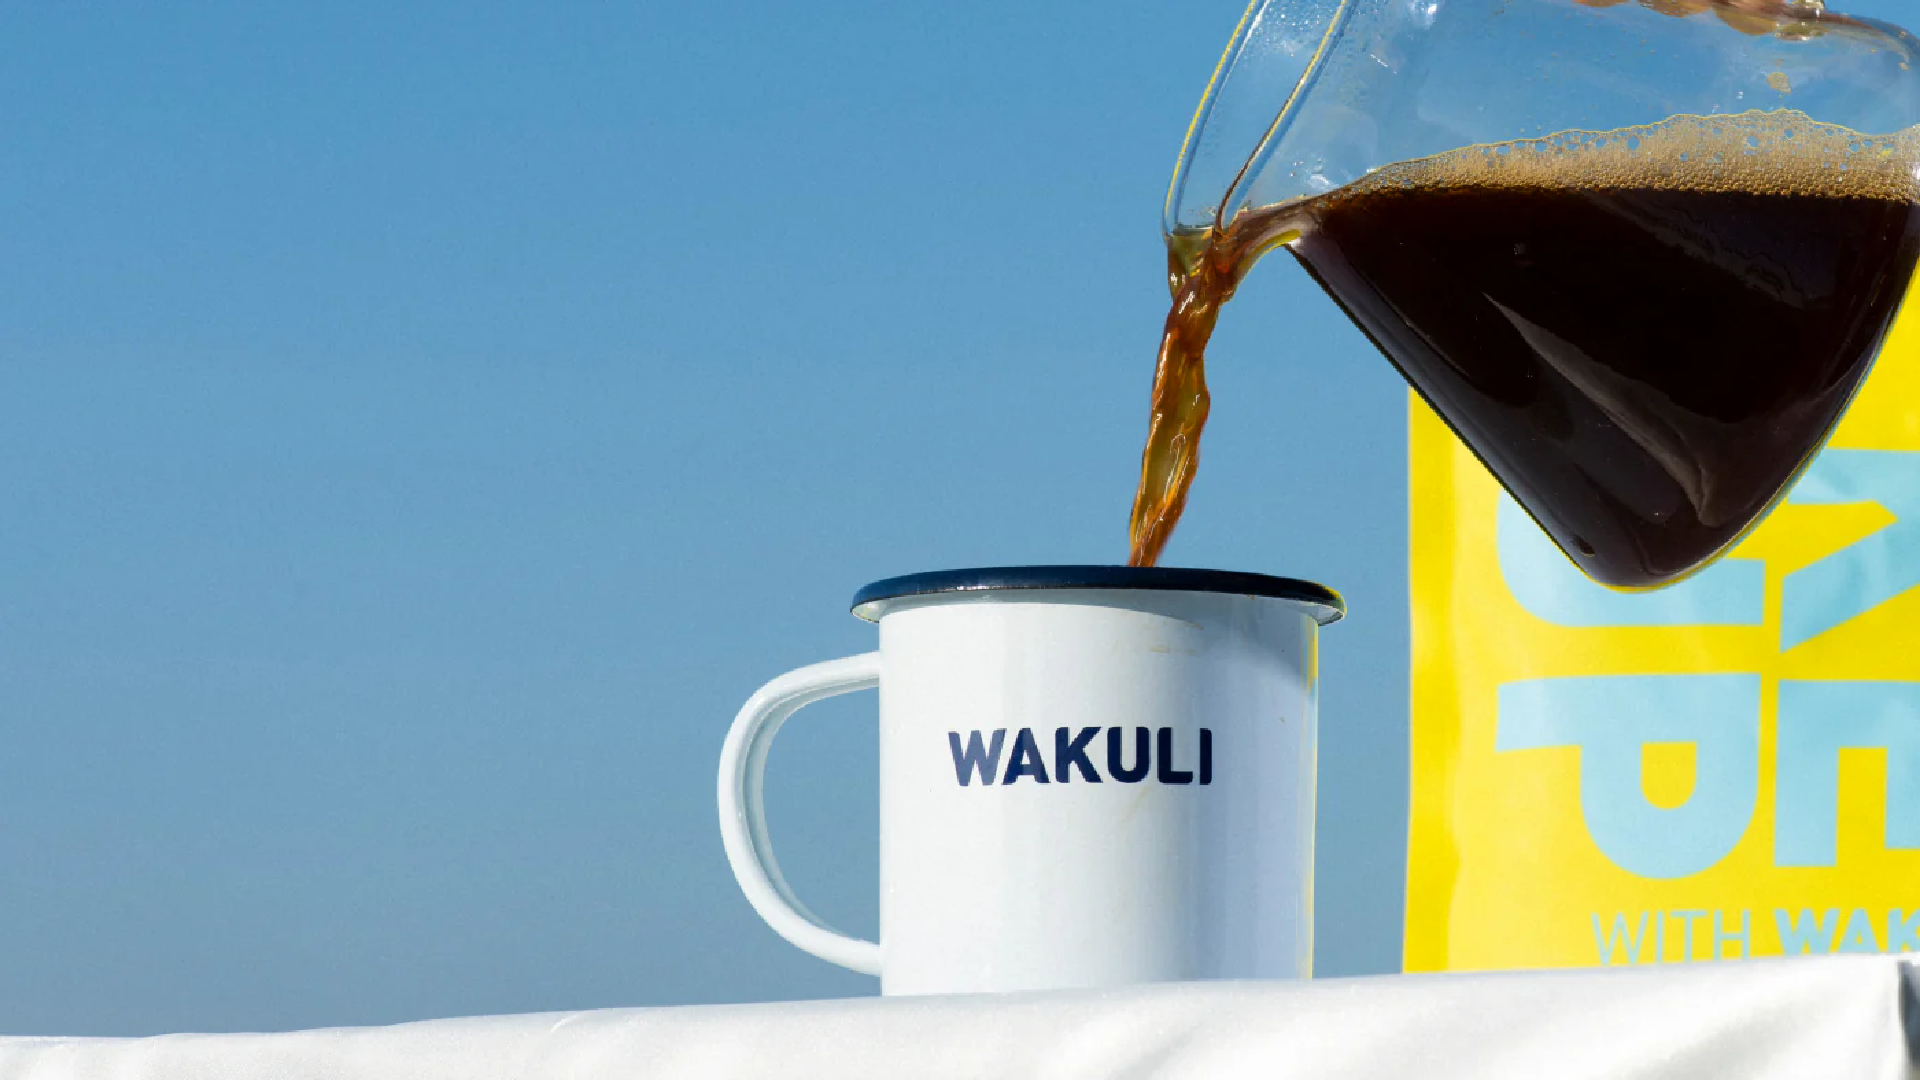 Wakuli - Brand Strategy